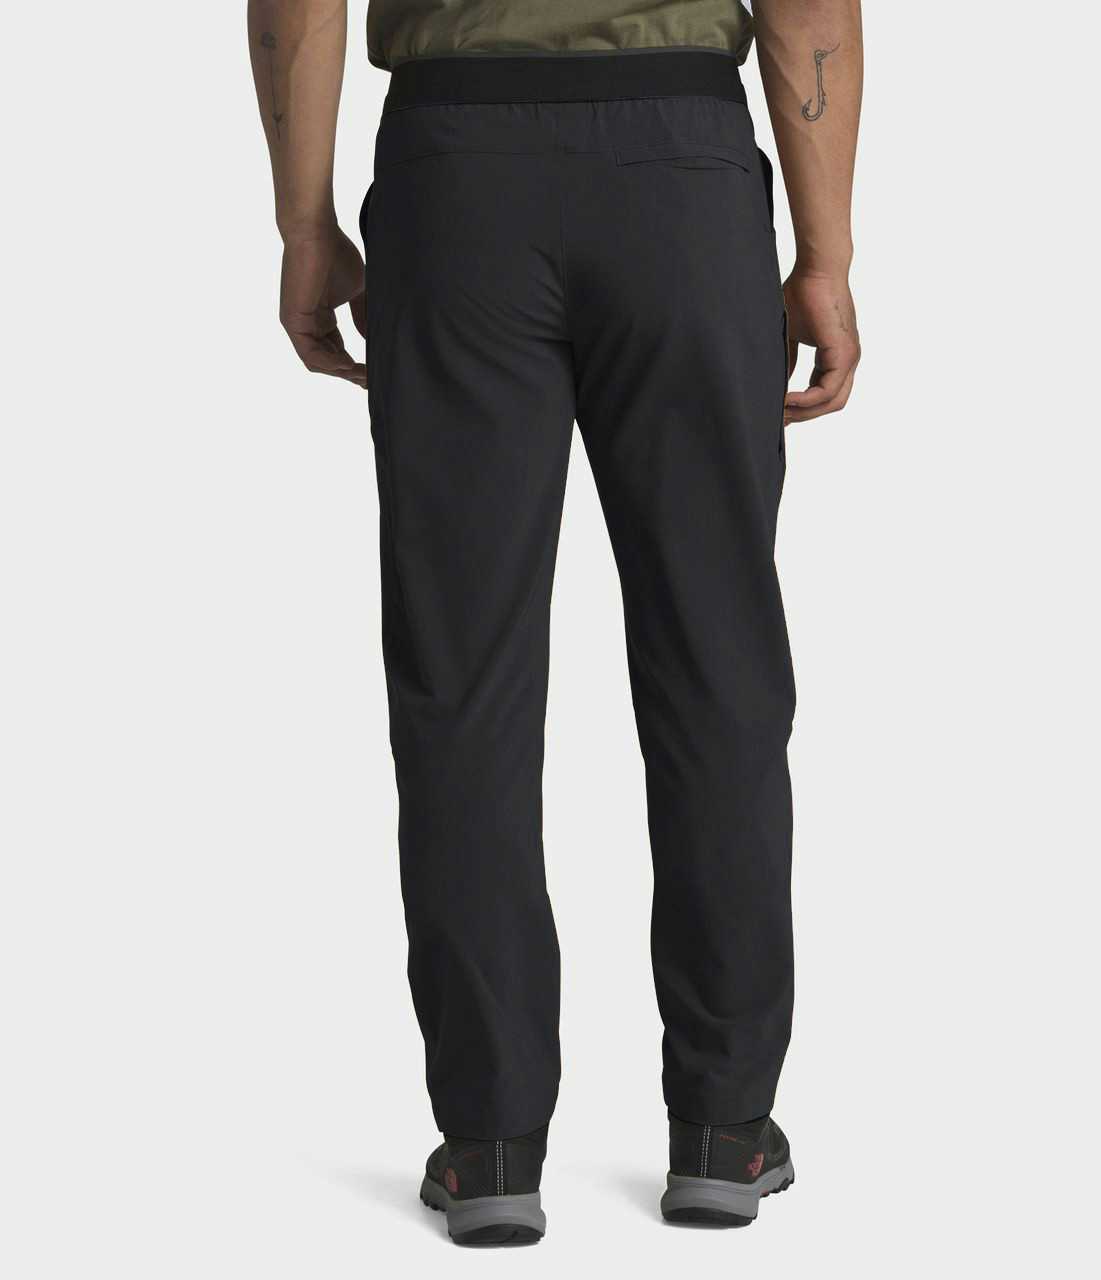 Paramount Active Pants Asphalt Grey/Asphalt Grey